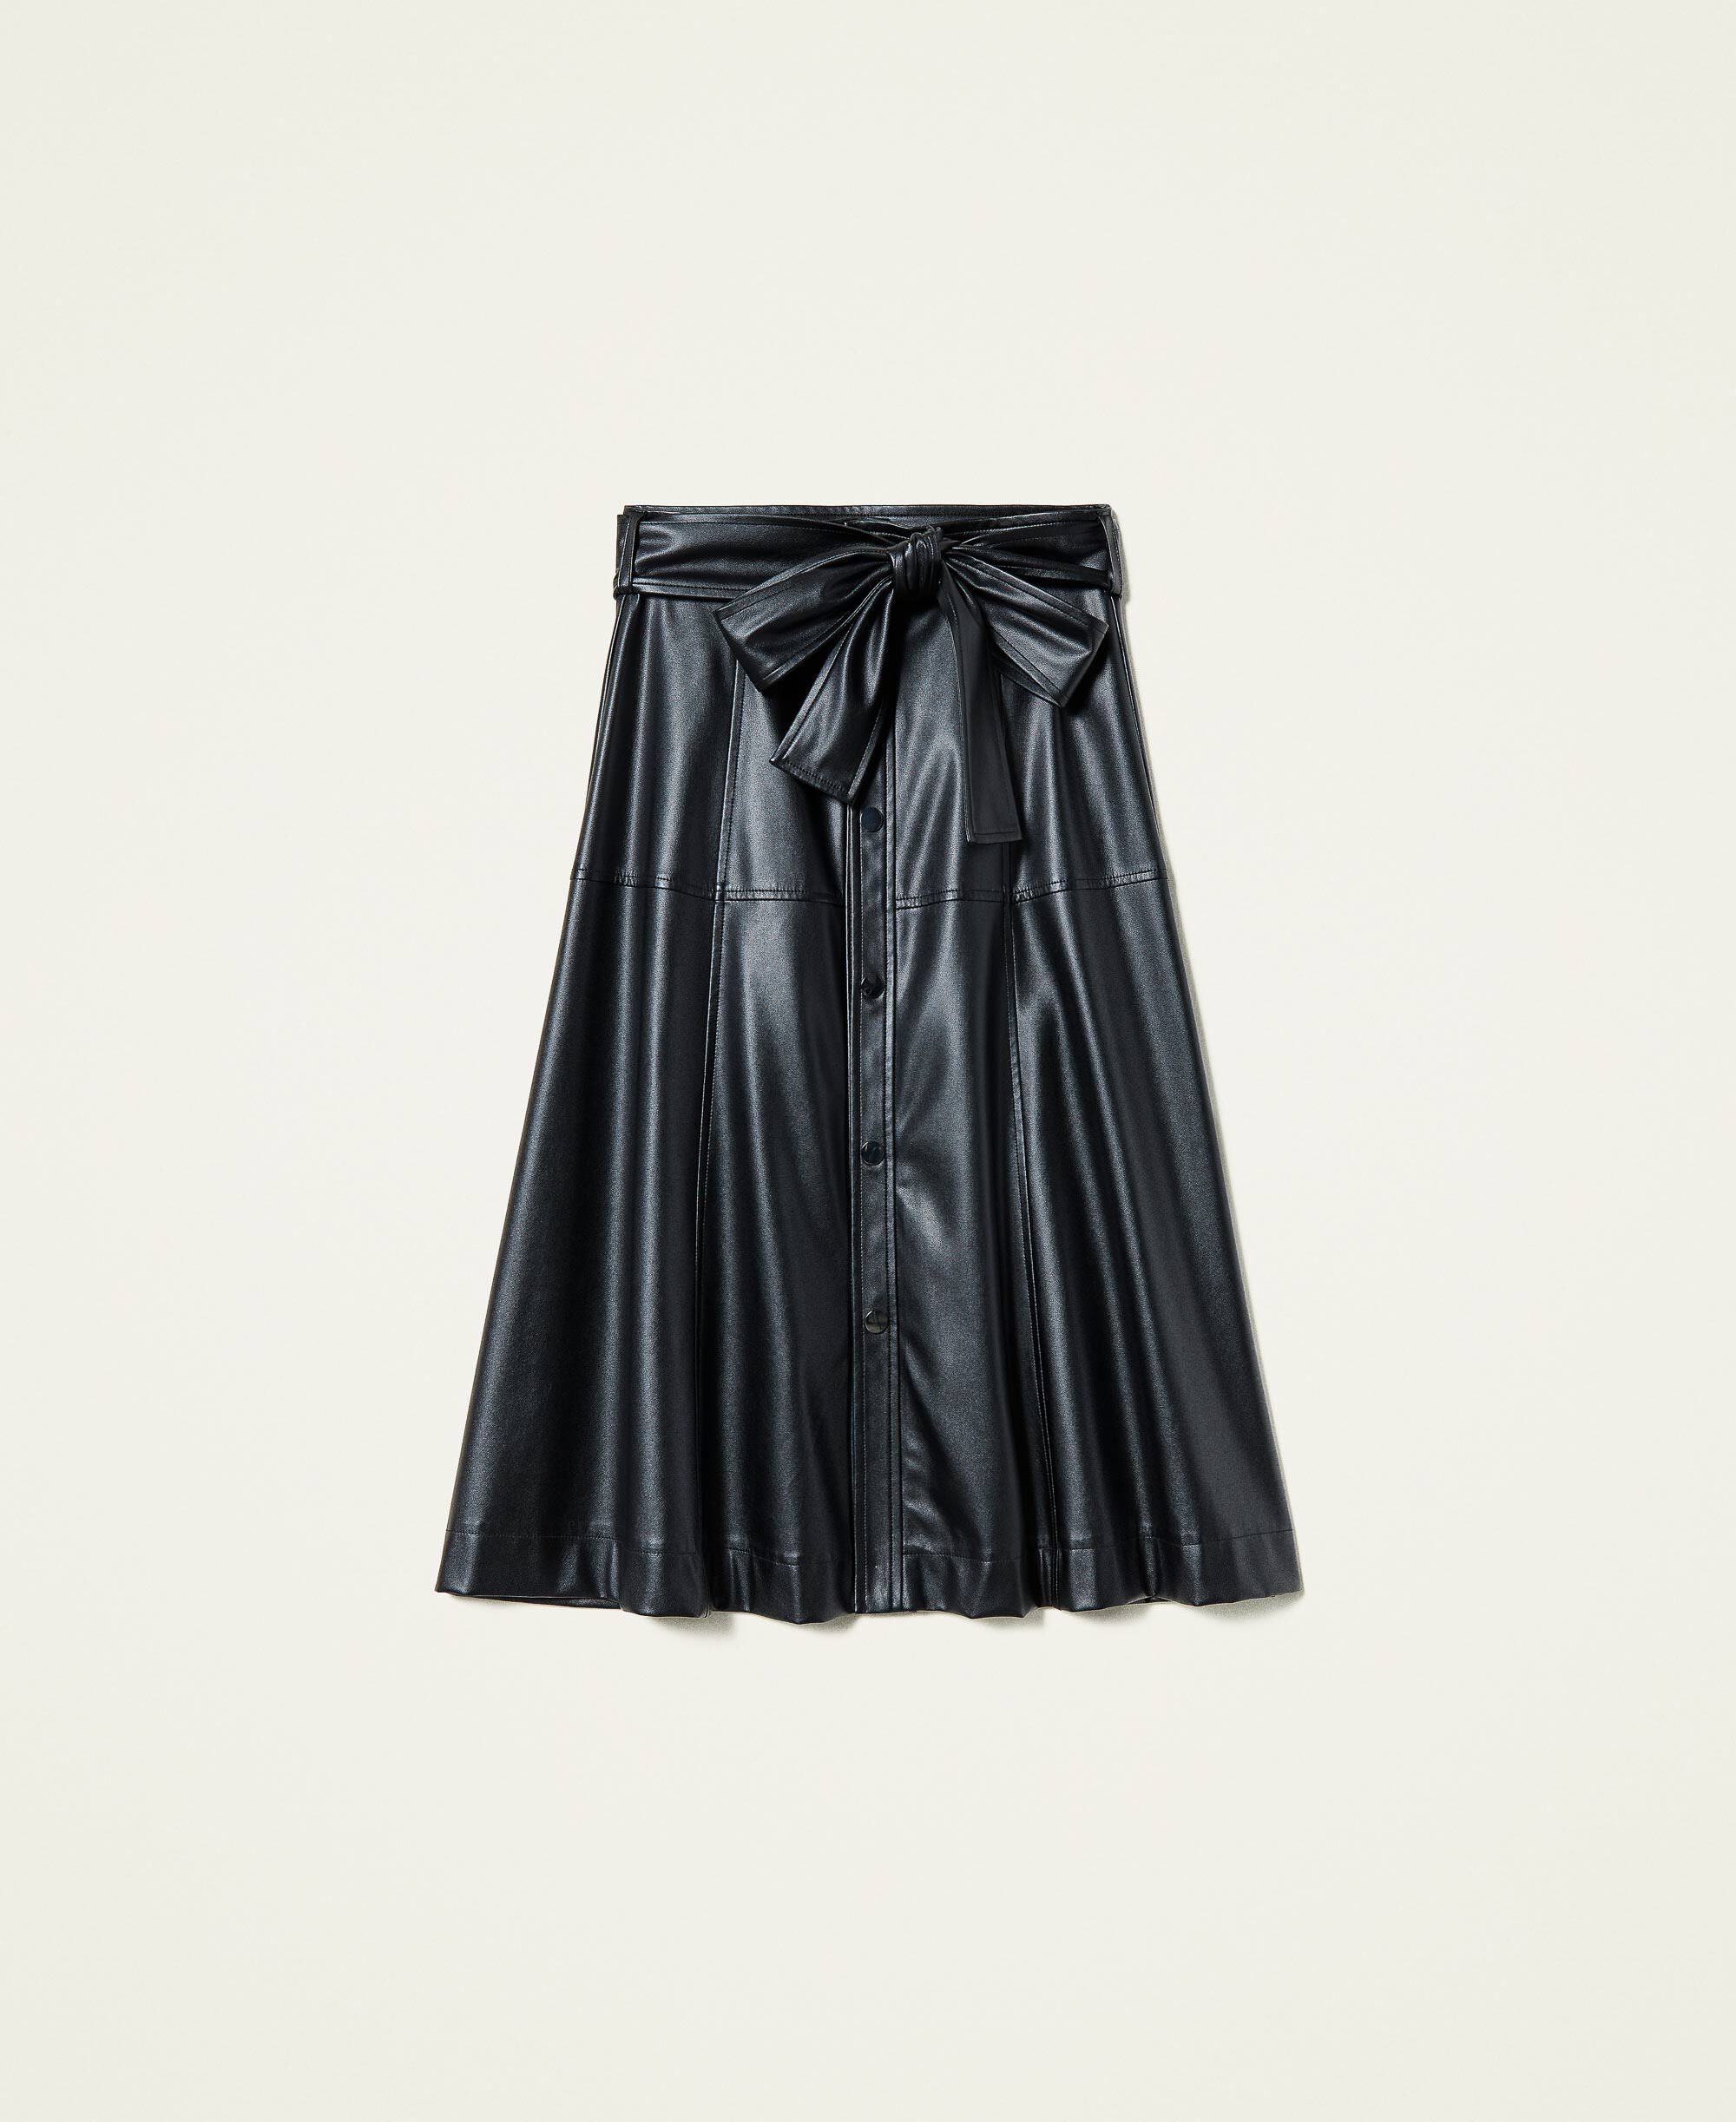 black midi skirt belt